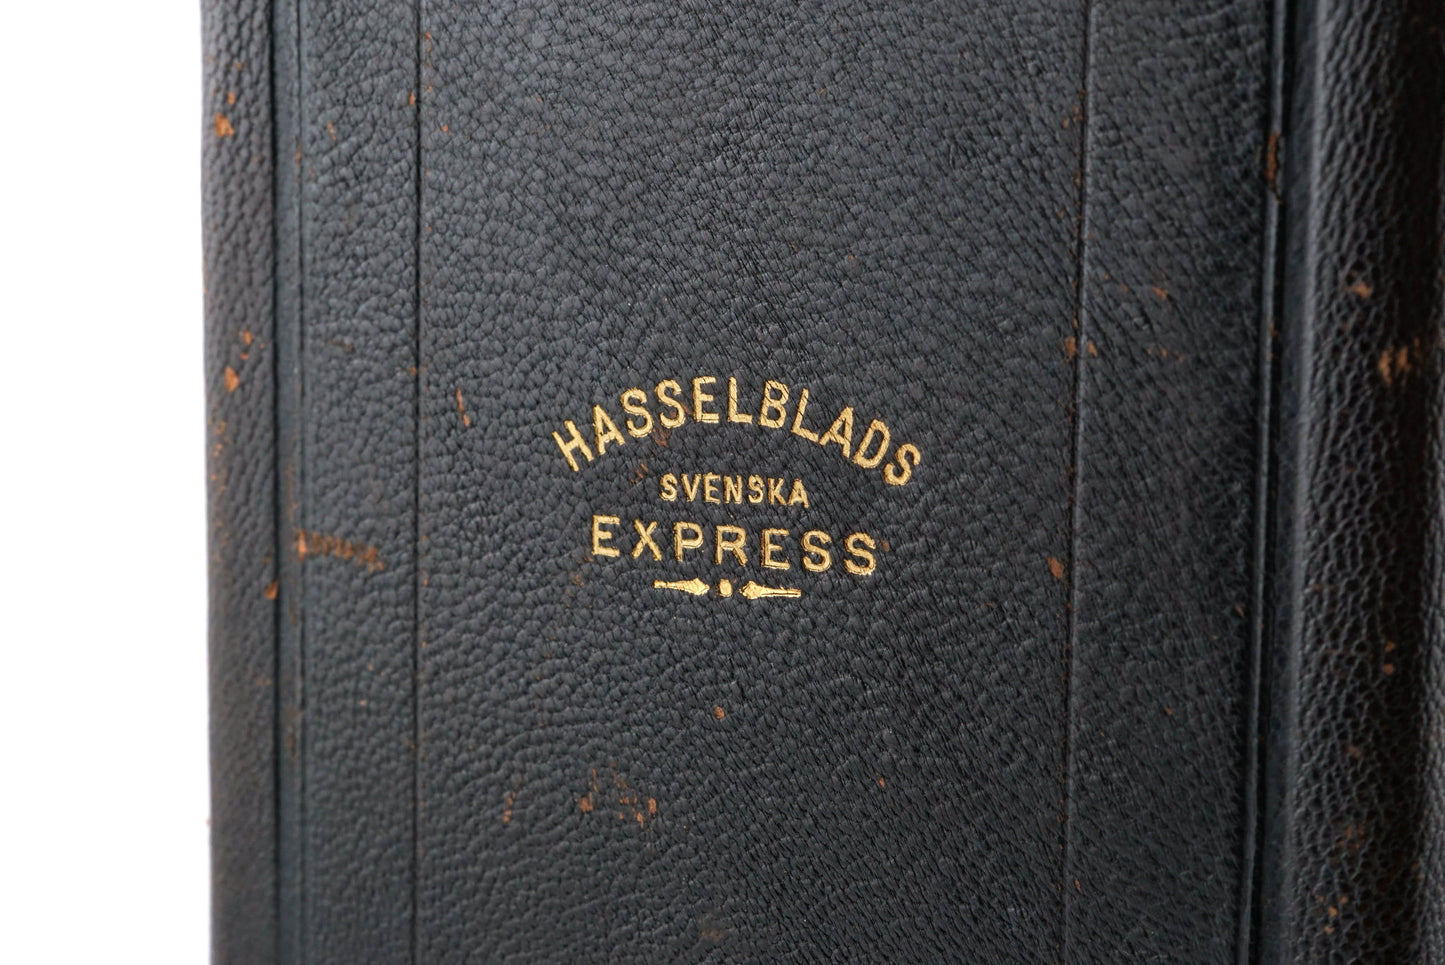 Hasselblad Svenska Express